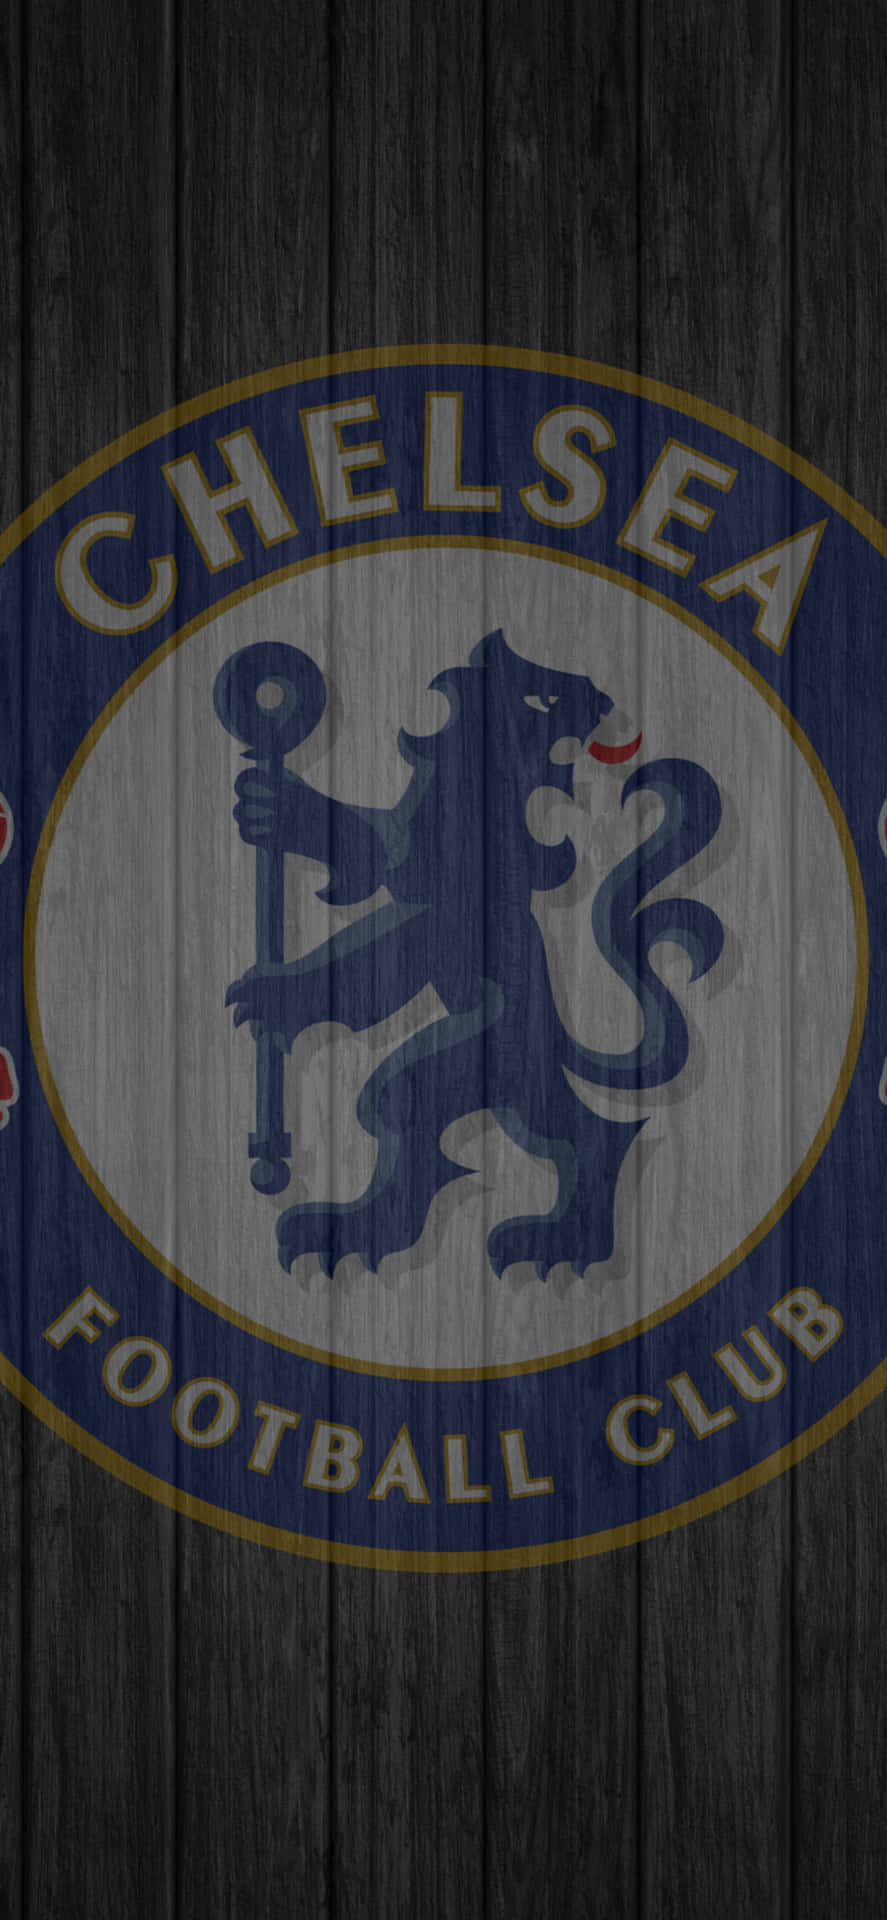 Erhaltensie Die Neuesten Nachrichten Des Chelsea Football Clubs Mit Dem Chelsea Iphone. Wallpaper